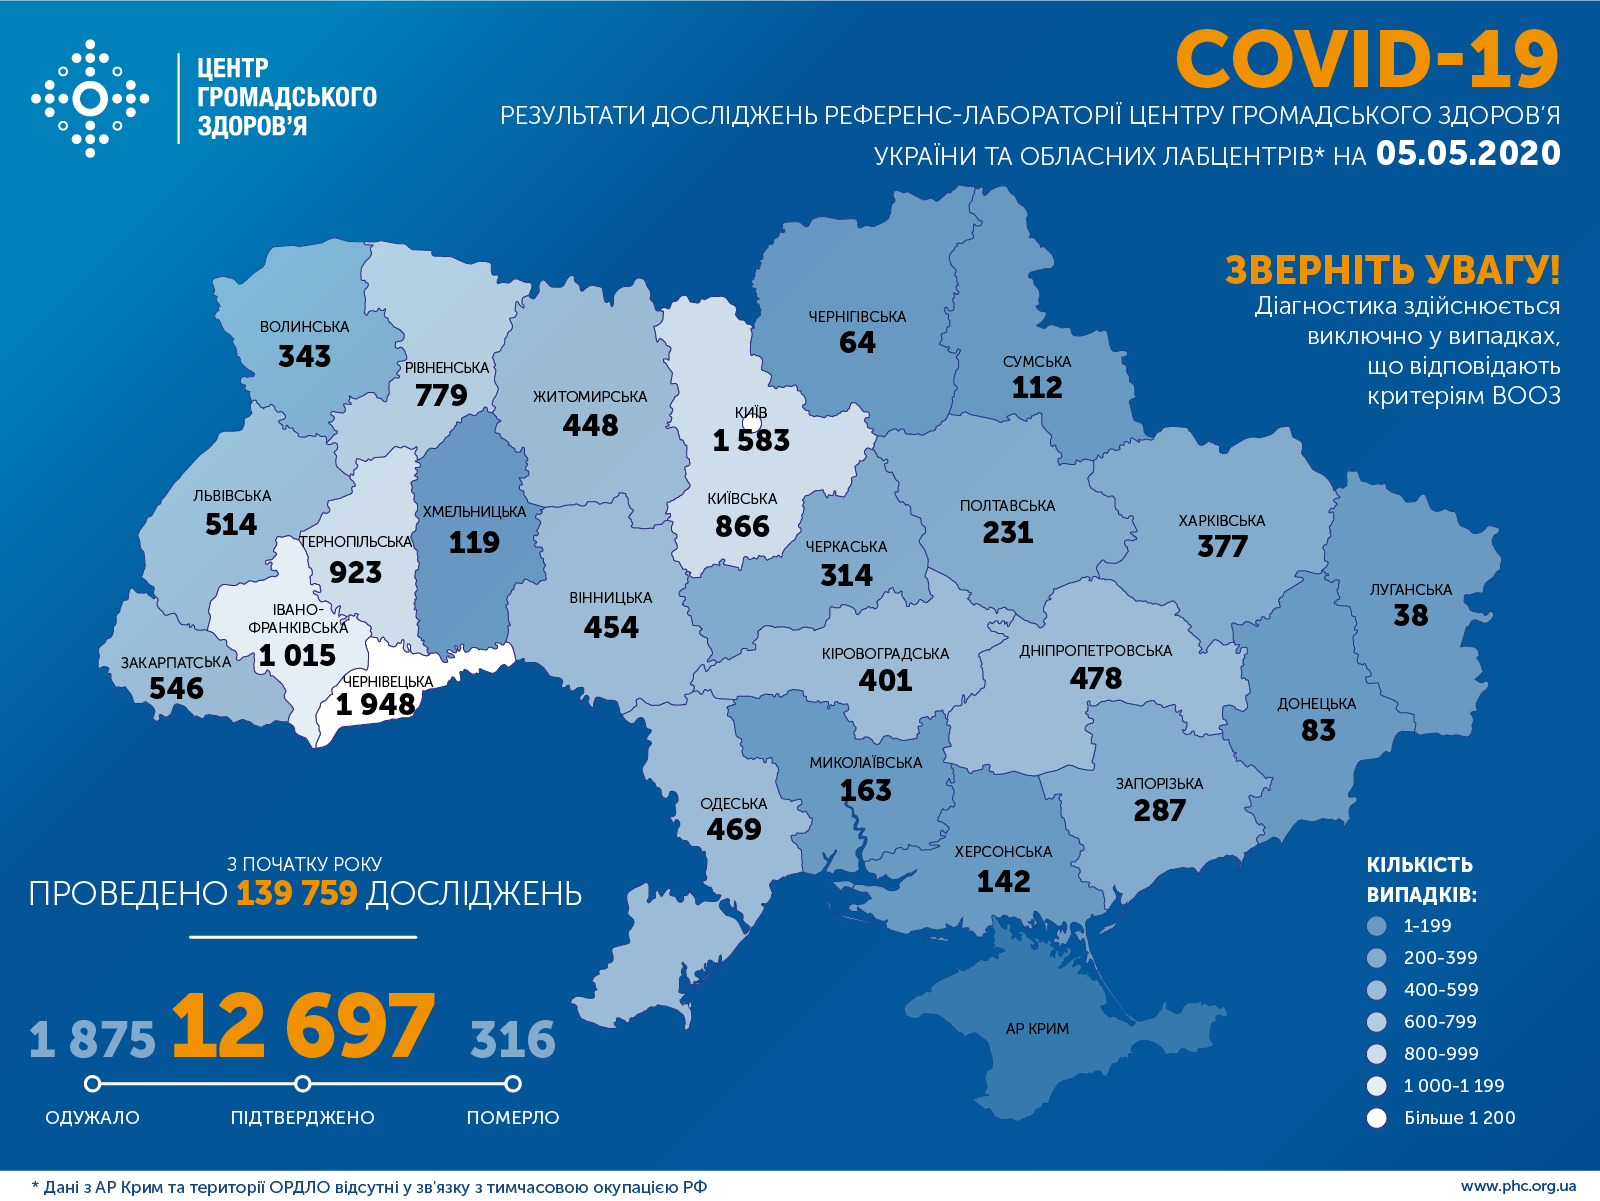 Йде на спад. За добу зафіксовано 366 нових випадків коронавірусу в Україні